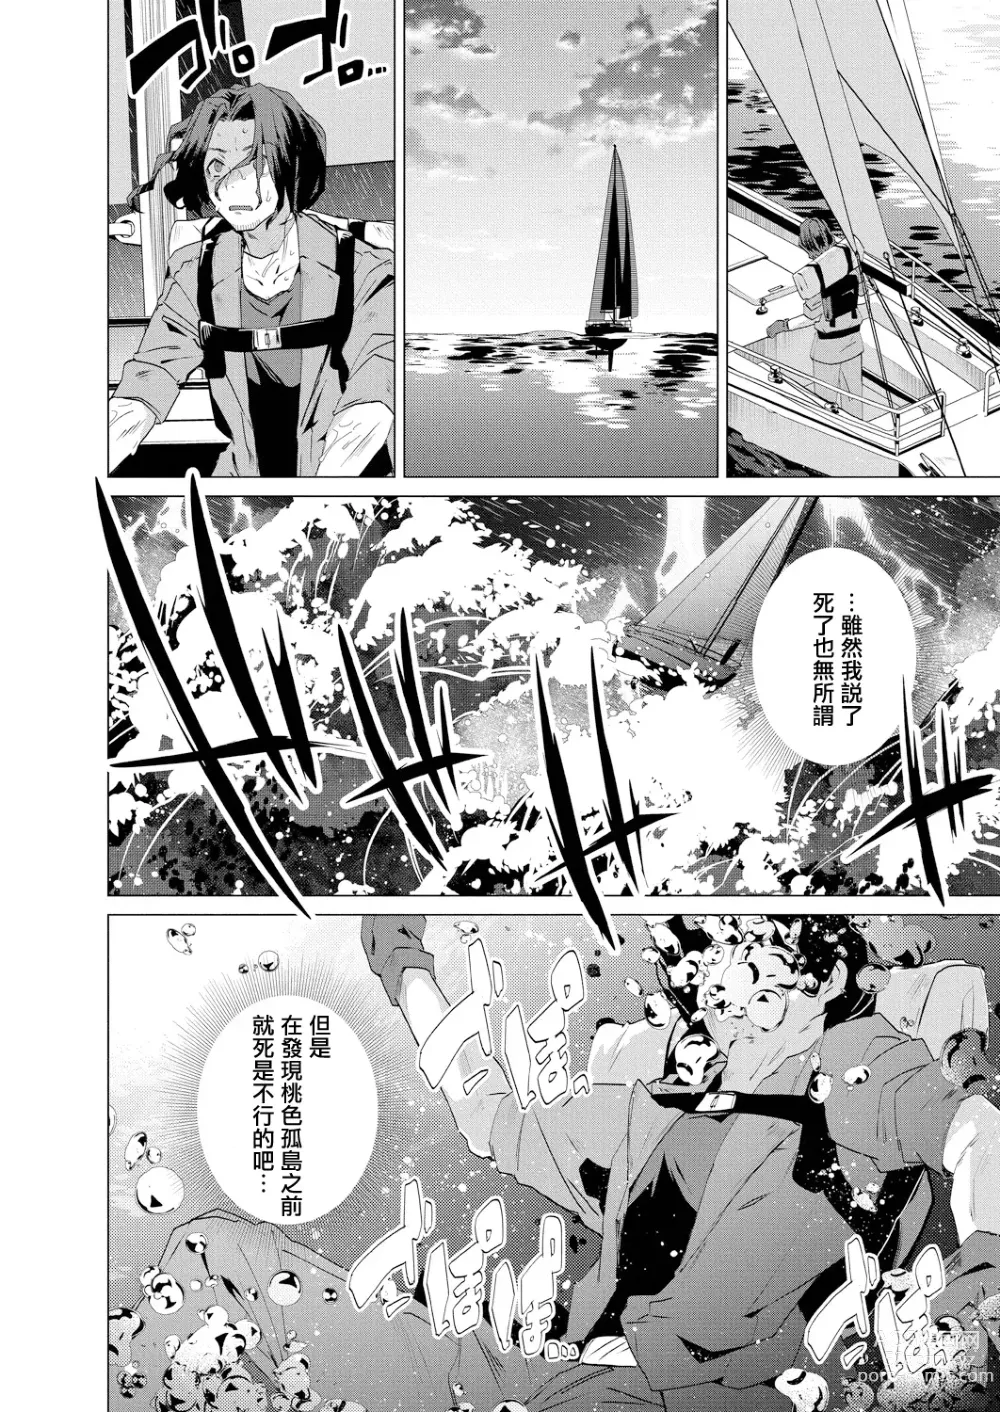 Page 4 of manga Kassyoku Musume no Harem Shima - Harem Island of Brown Girl Ch. 1